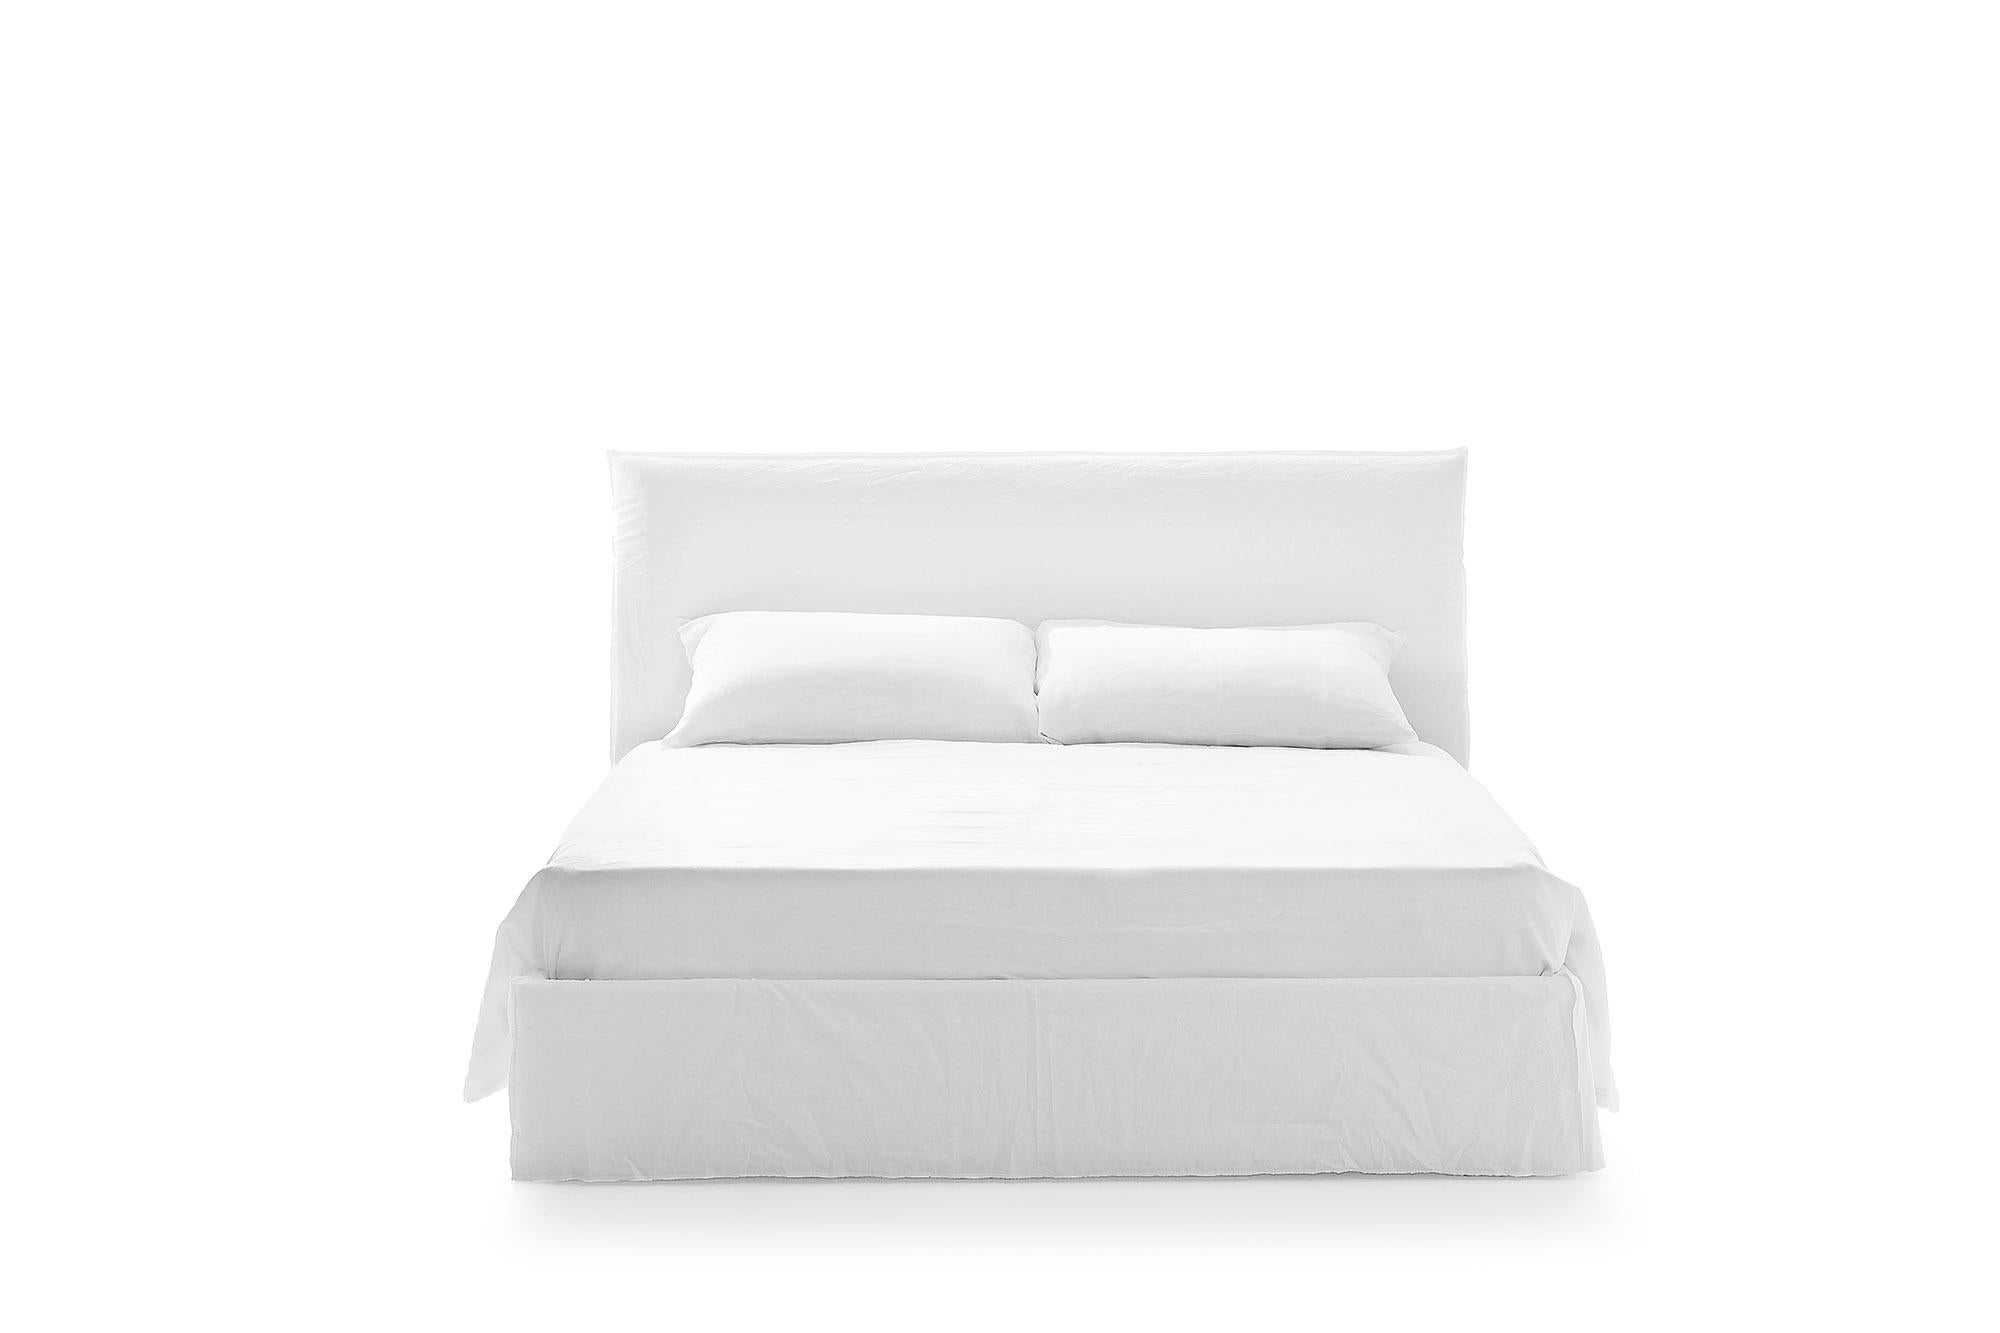 Die Betten von Ghost bilden eine Familie, in der jedes Produkt in verschiedenen Varianten und Größen erhältlich ist: Einzel- und Doppelbetten mit oder ohne Kopfteil in verschiedenen Größen, die sich an jede Art von Projekt anpassen. Ghost-Betten